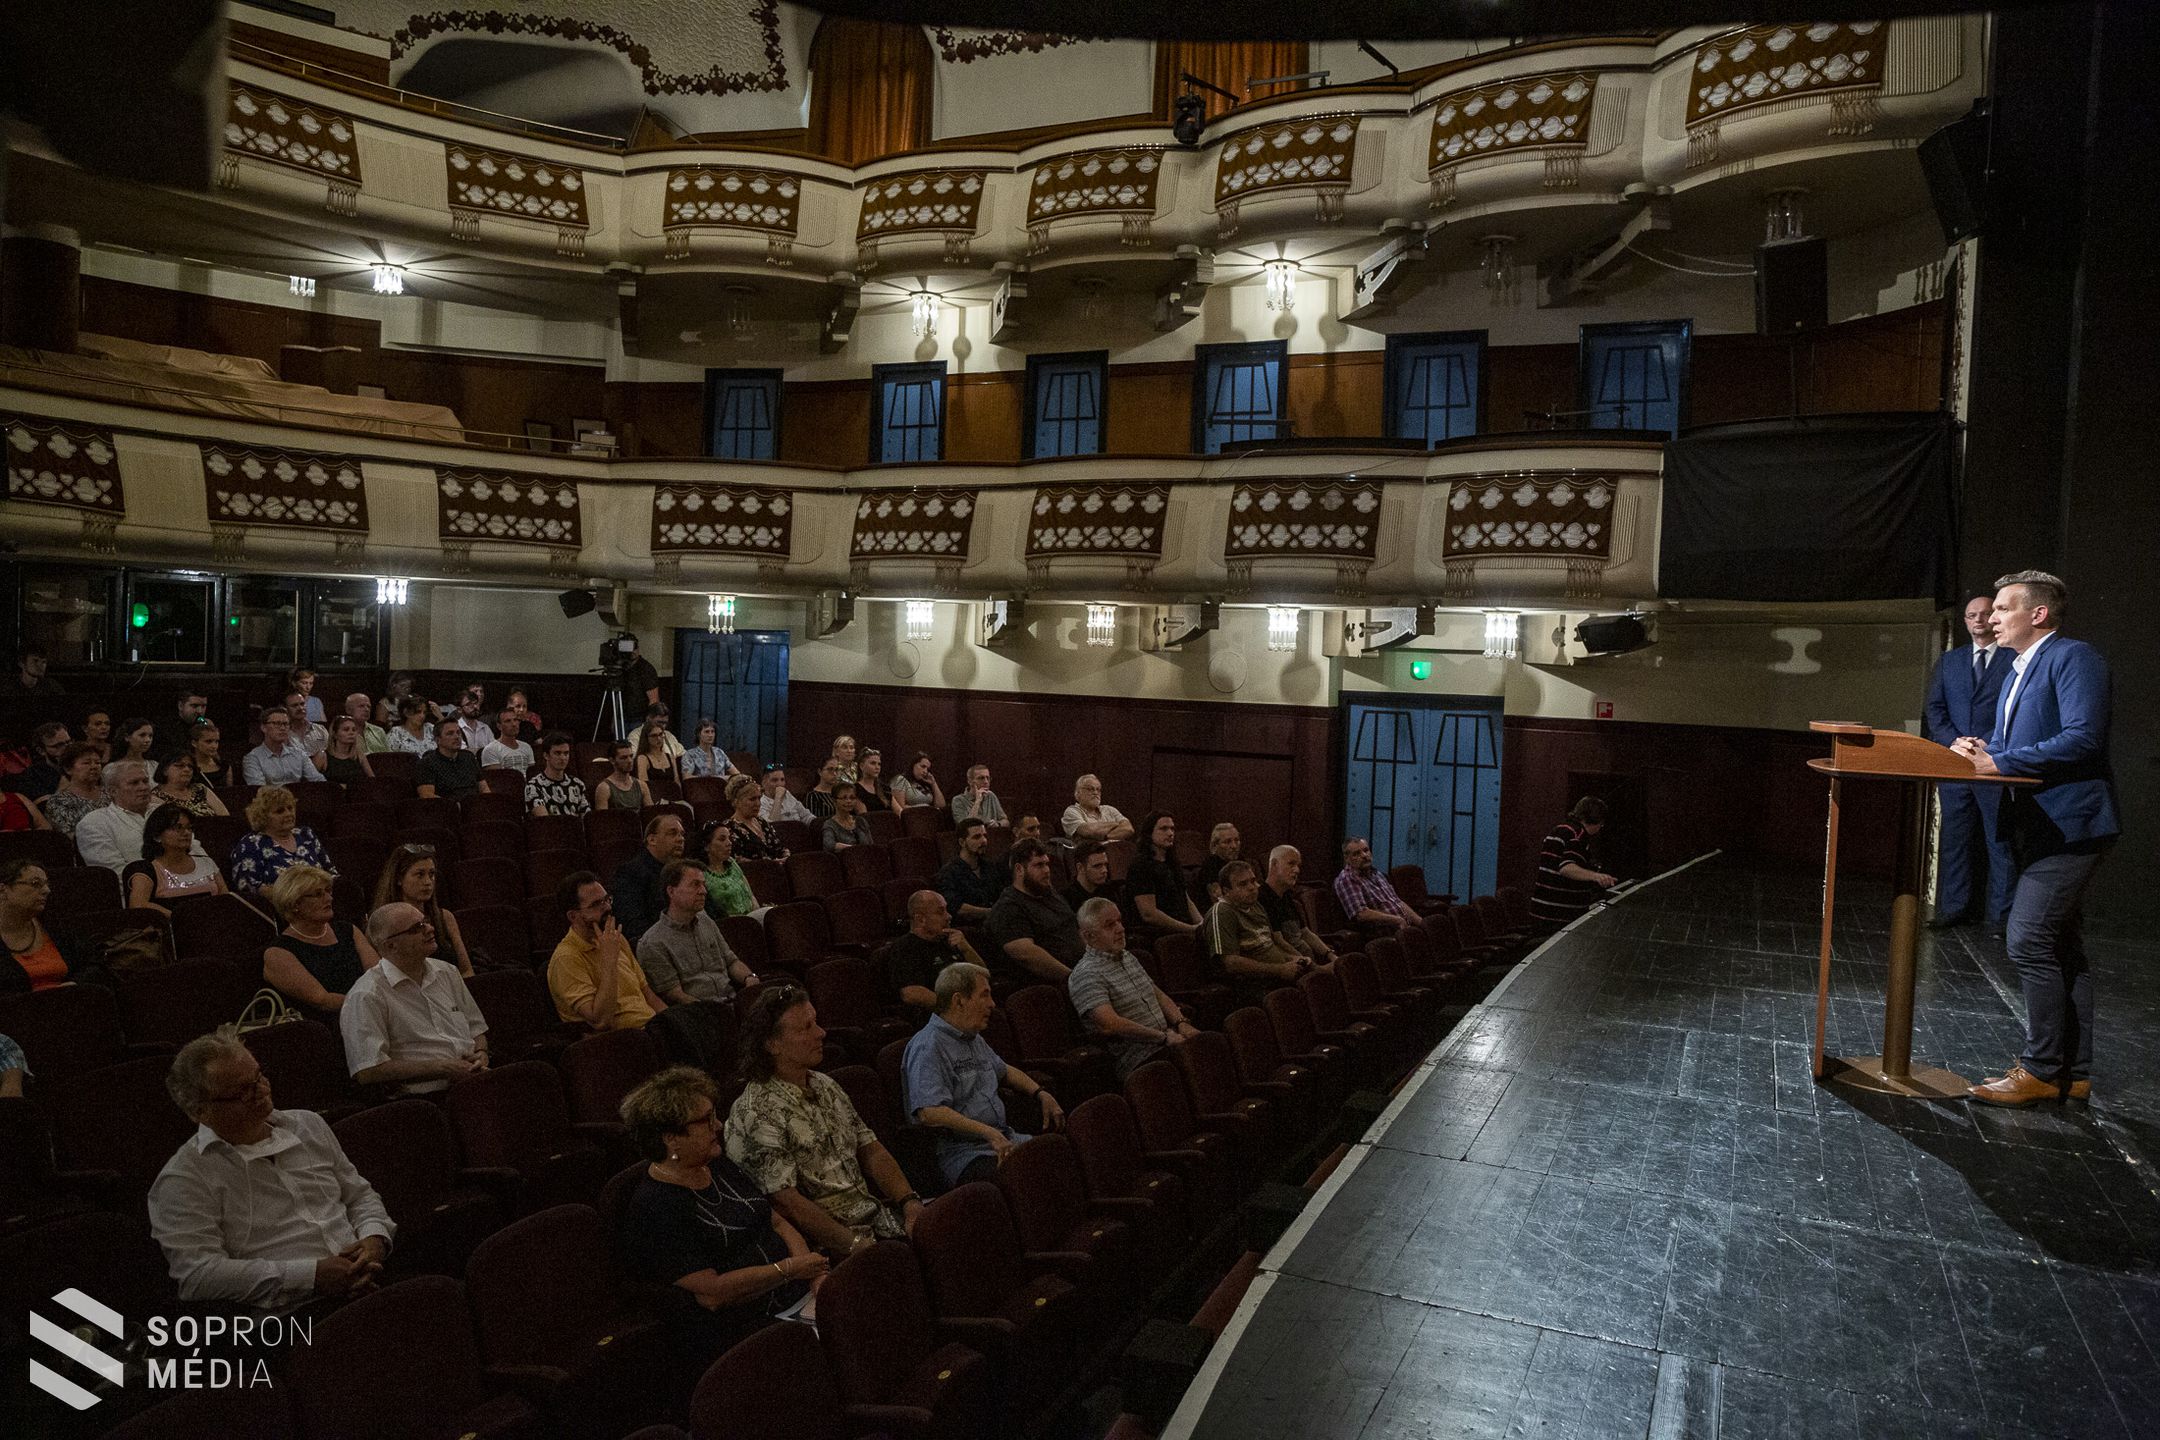 Évadzáró és évadnyitó összevont társulati ülést tartottak a soproni színházban
